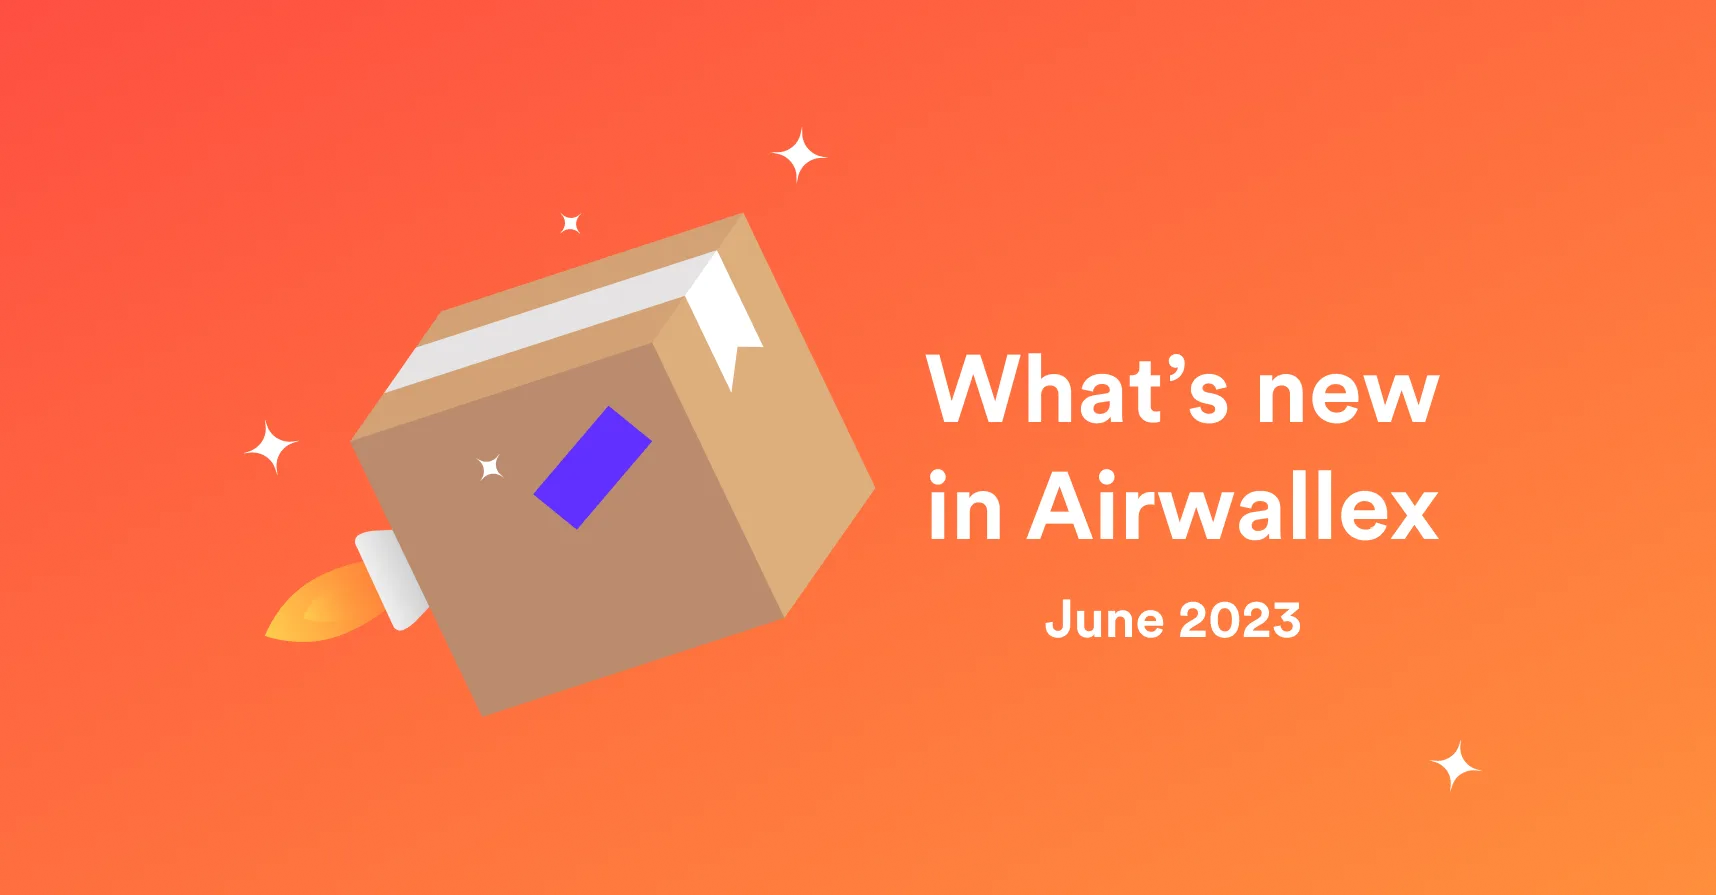 What's new in Airwallex - June 2023 logo